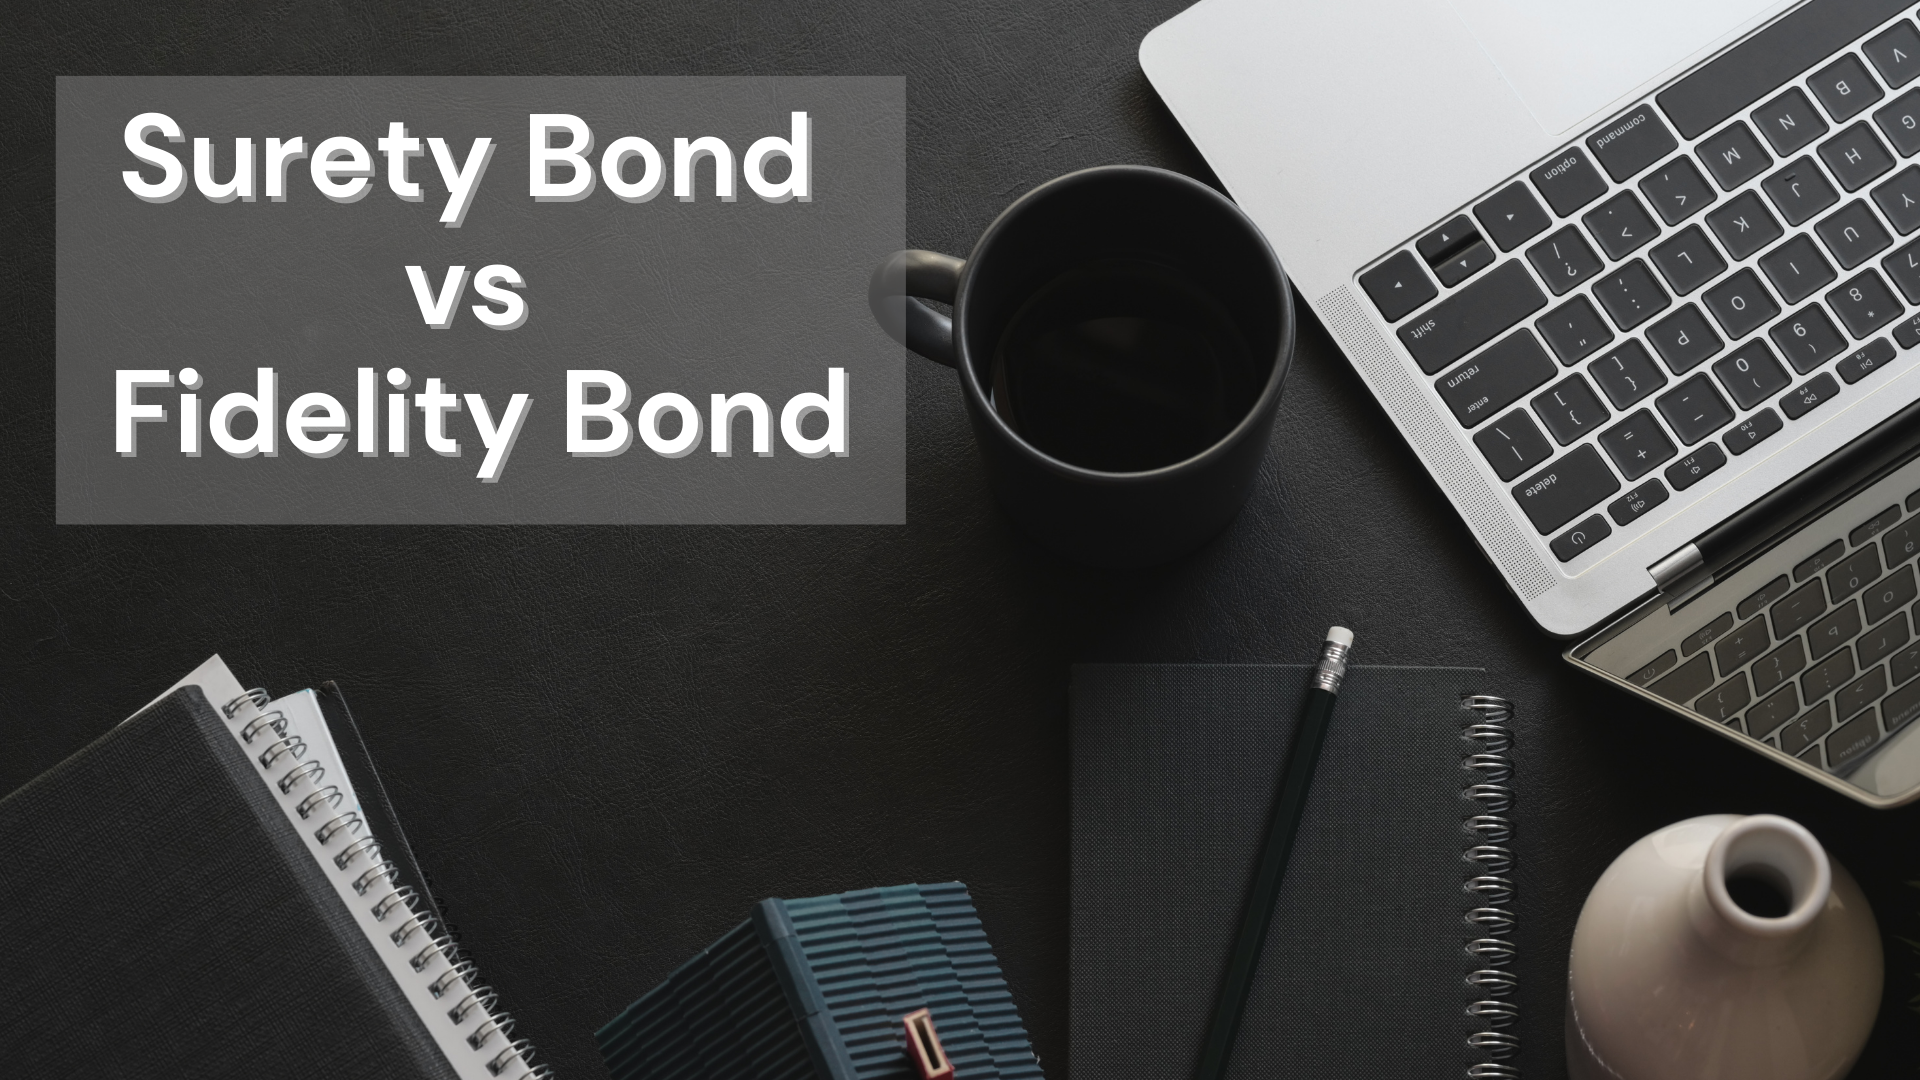 Surety Bond-Surety Bond vs Fidelity Bond